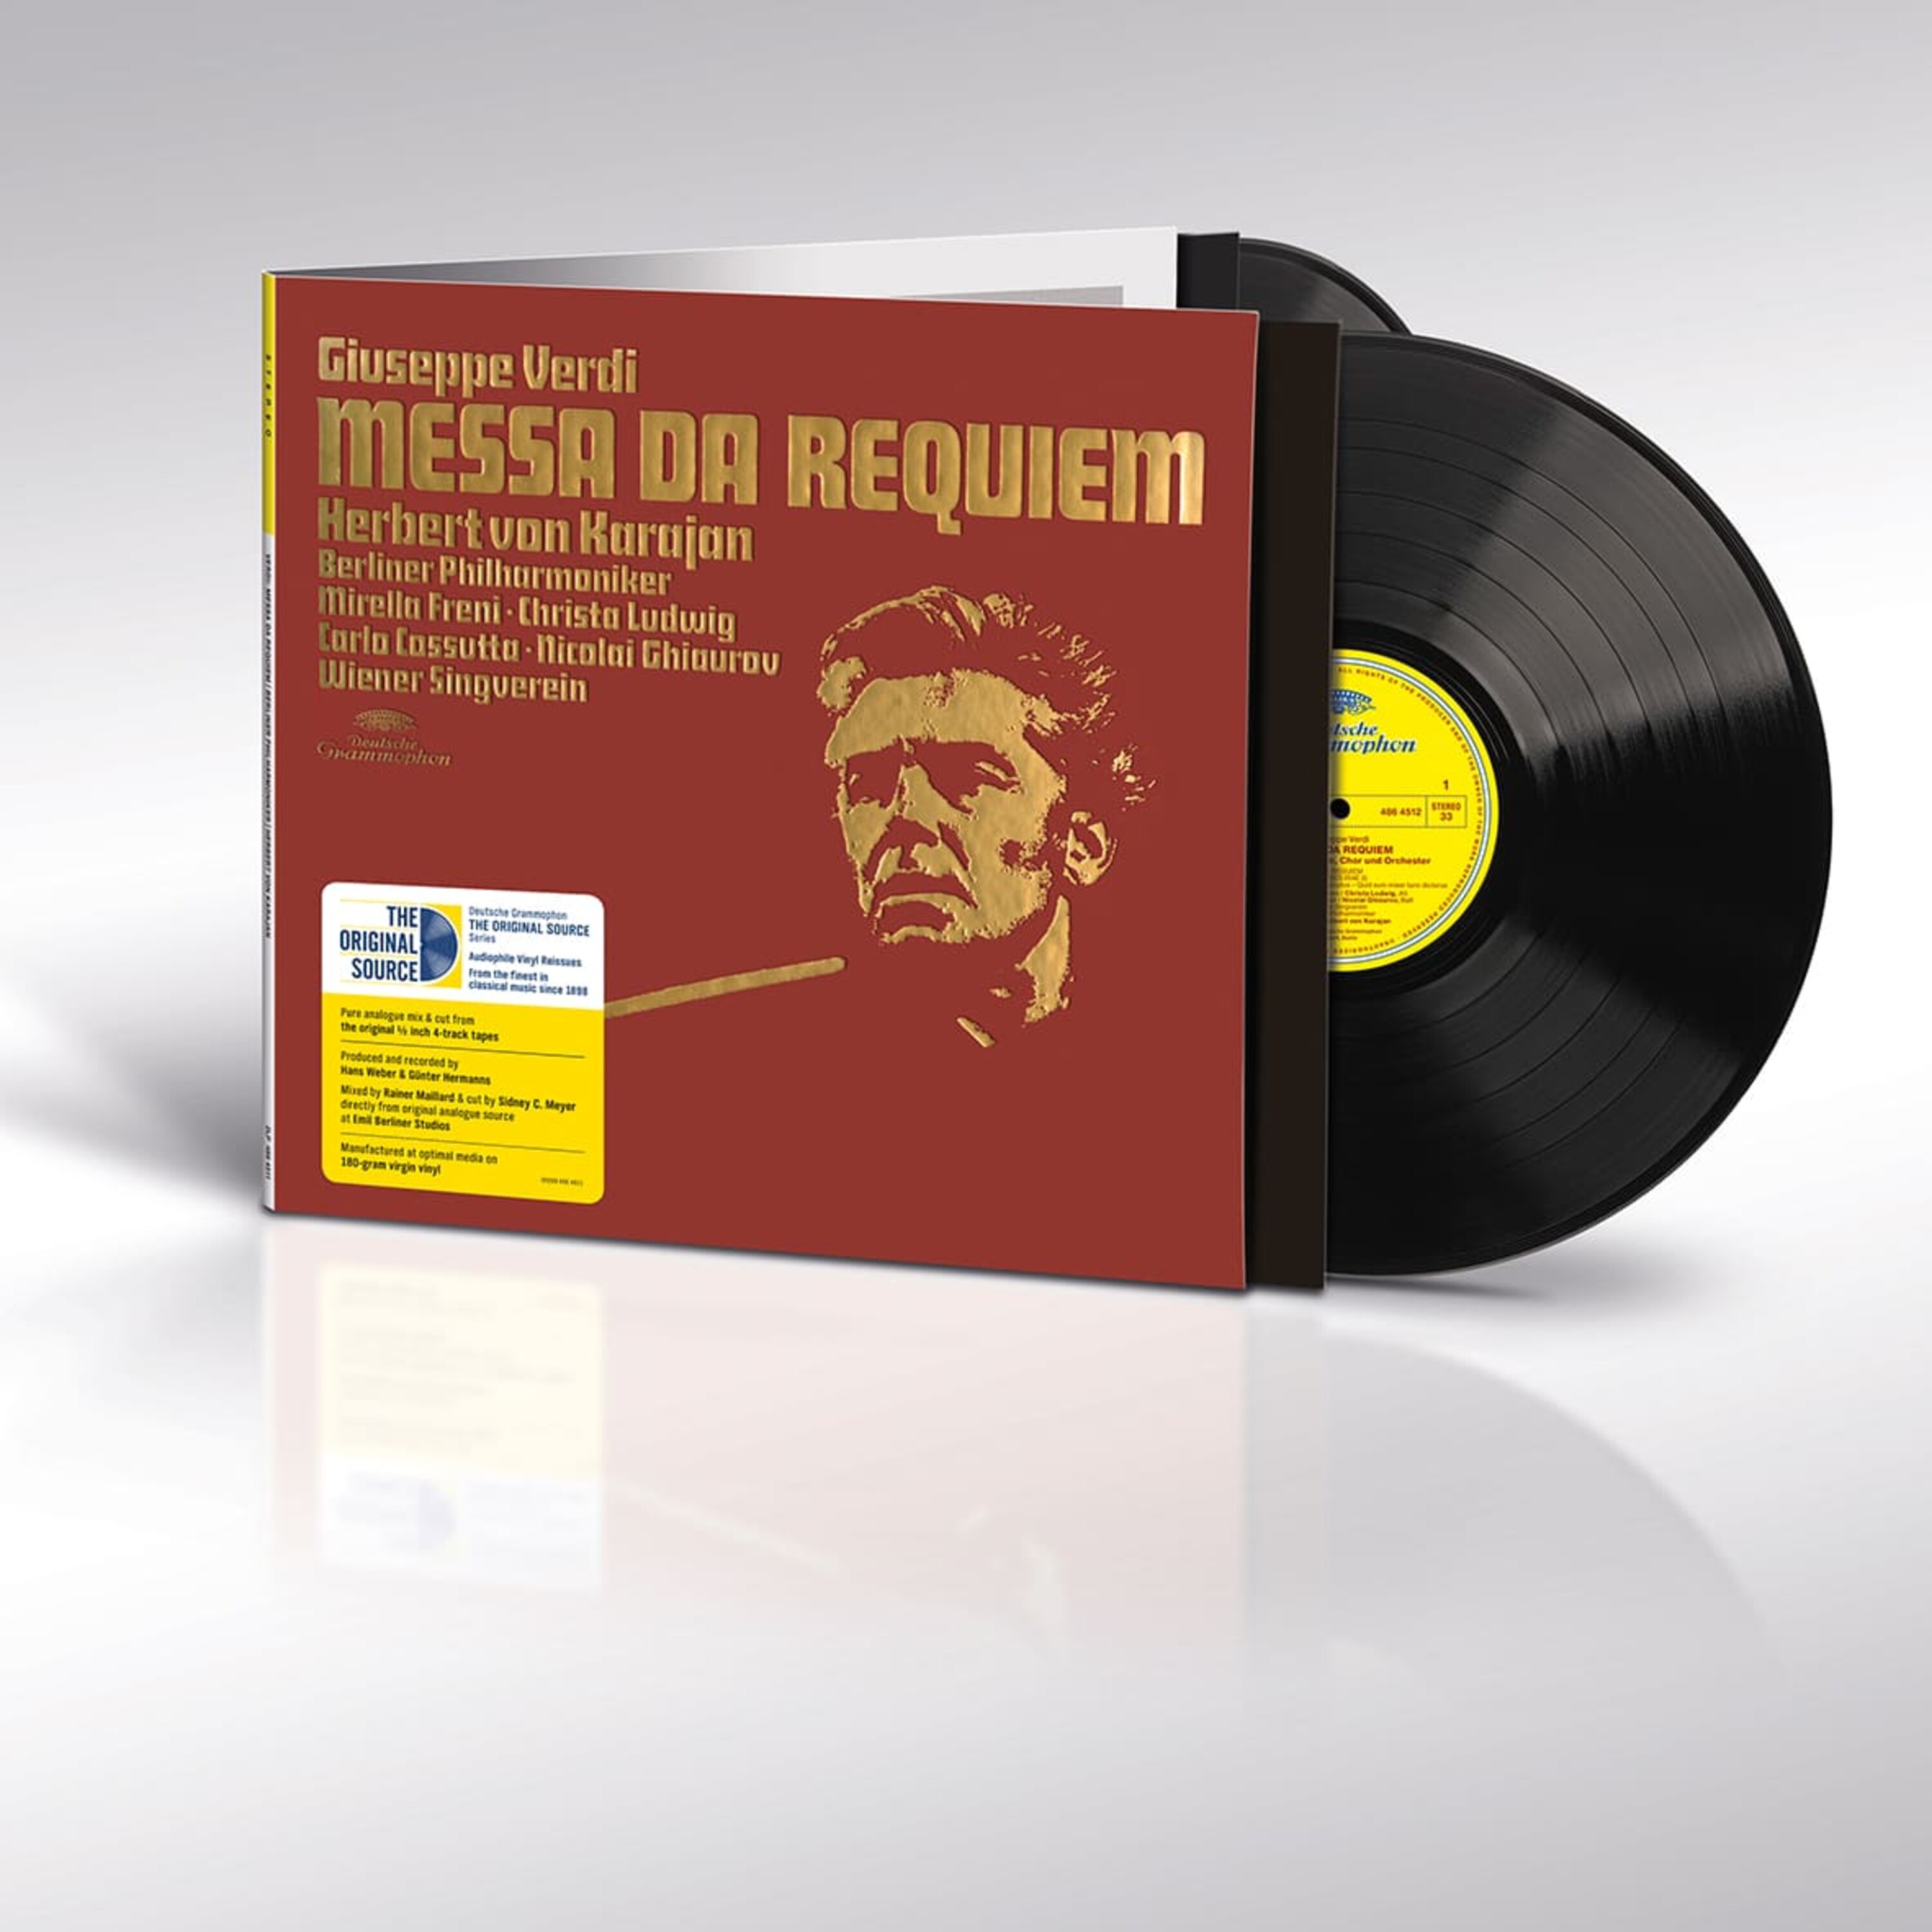 Verdi: Messa da Requiem  Herbert von Karajan DG Original Source